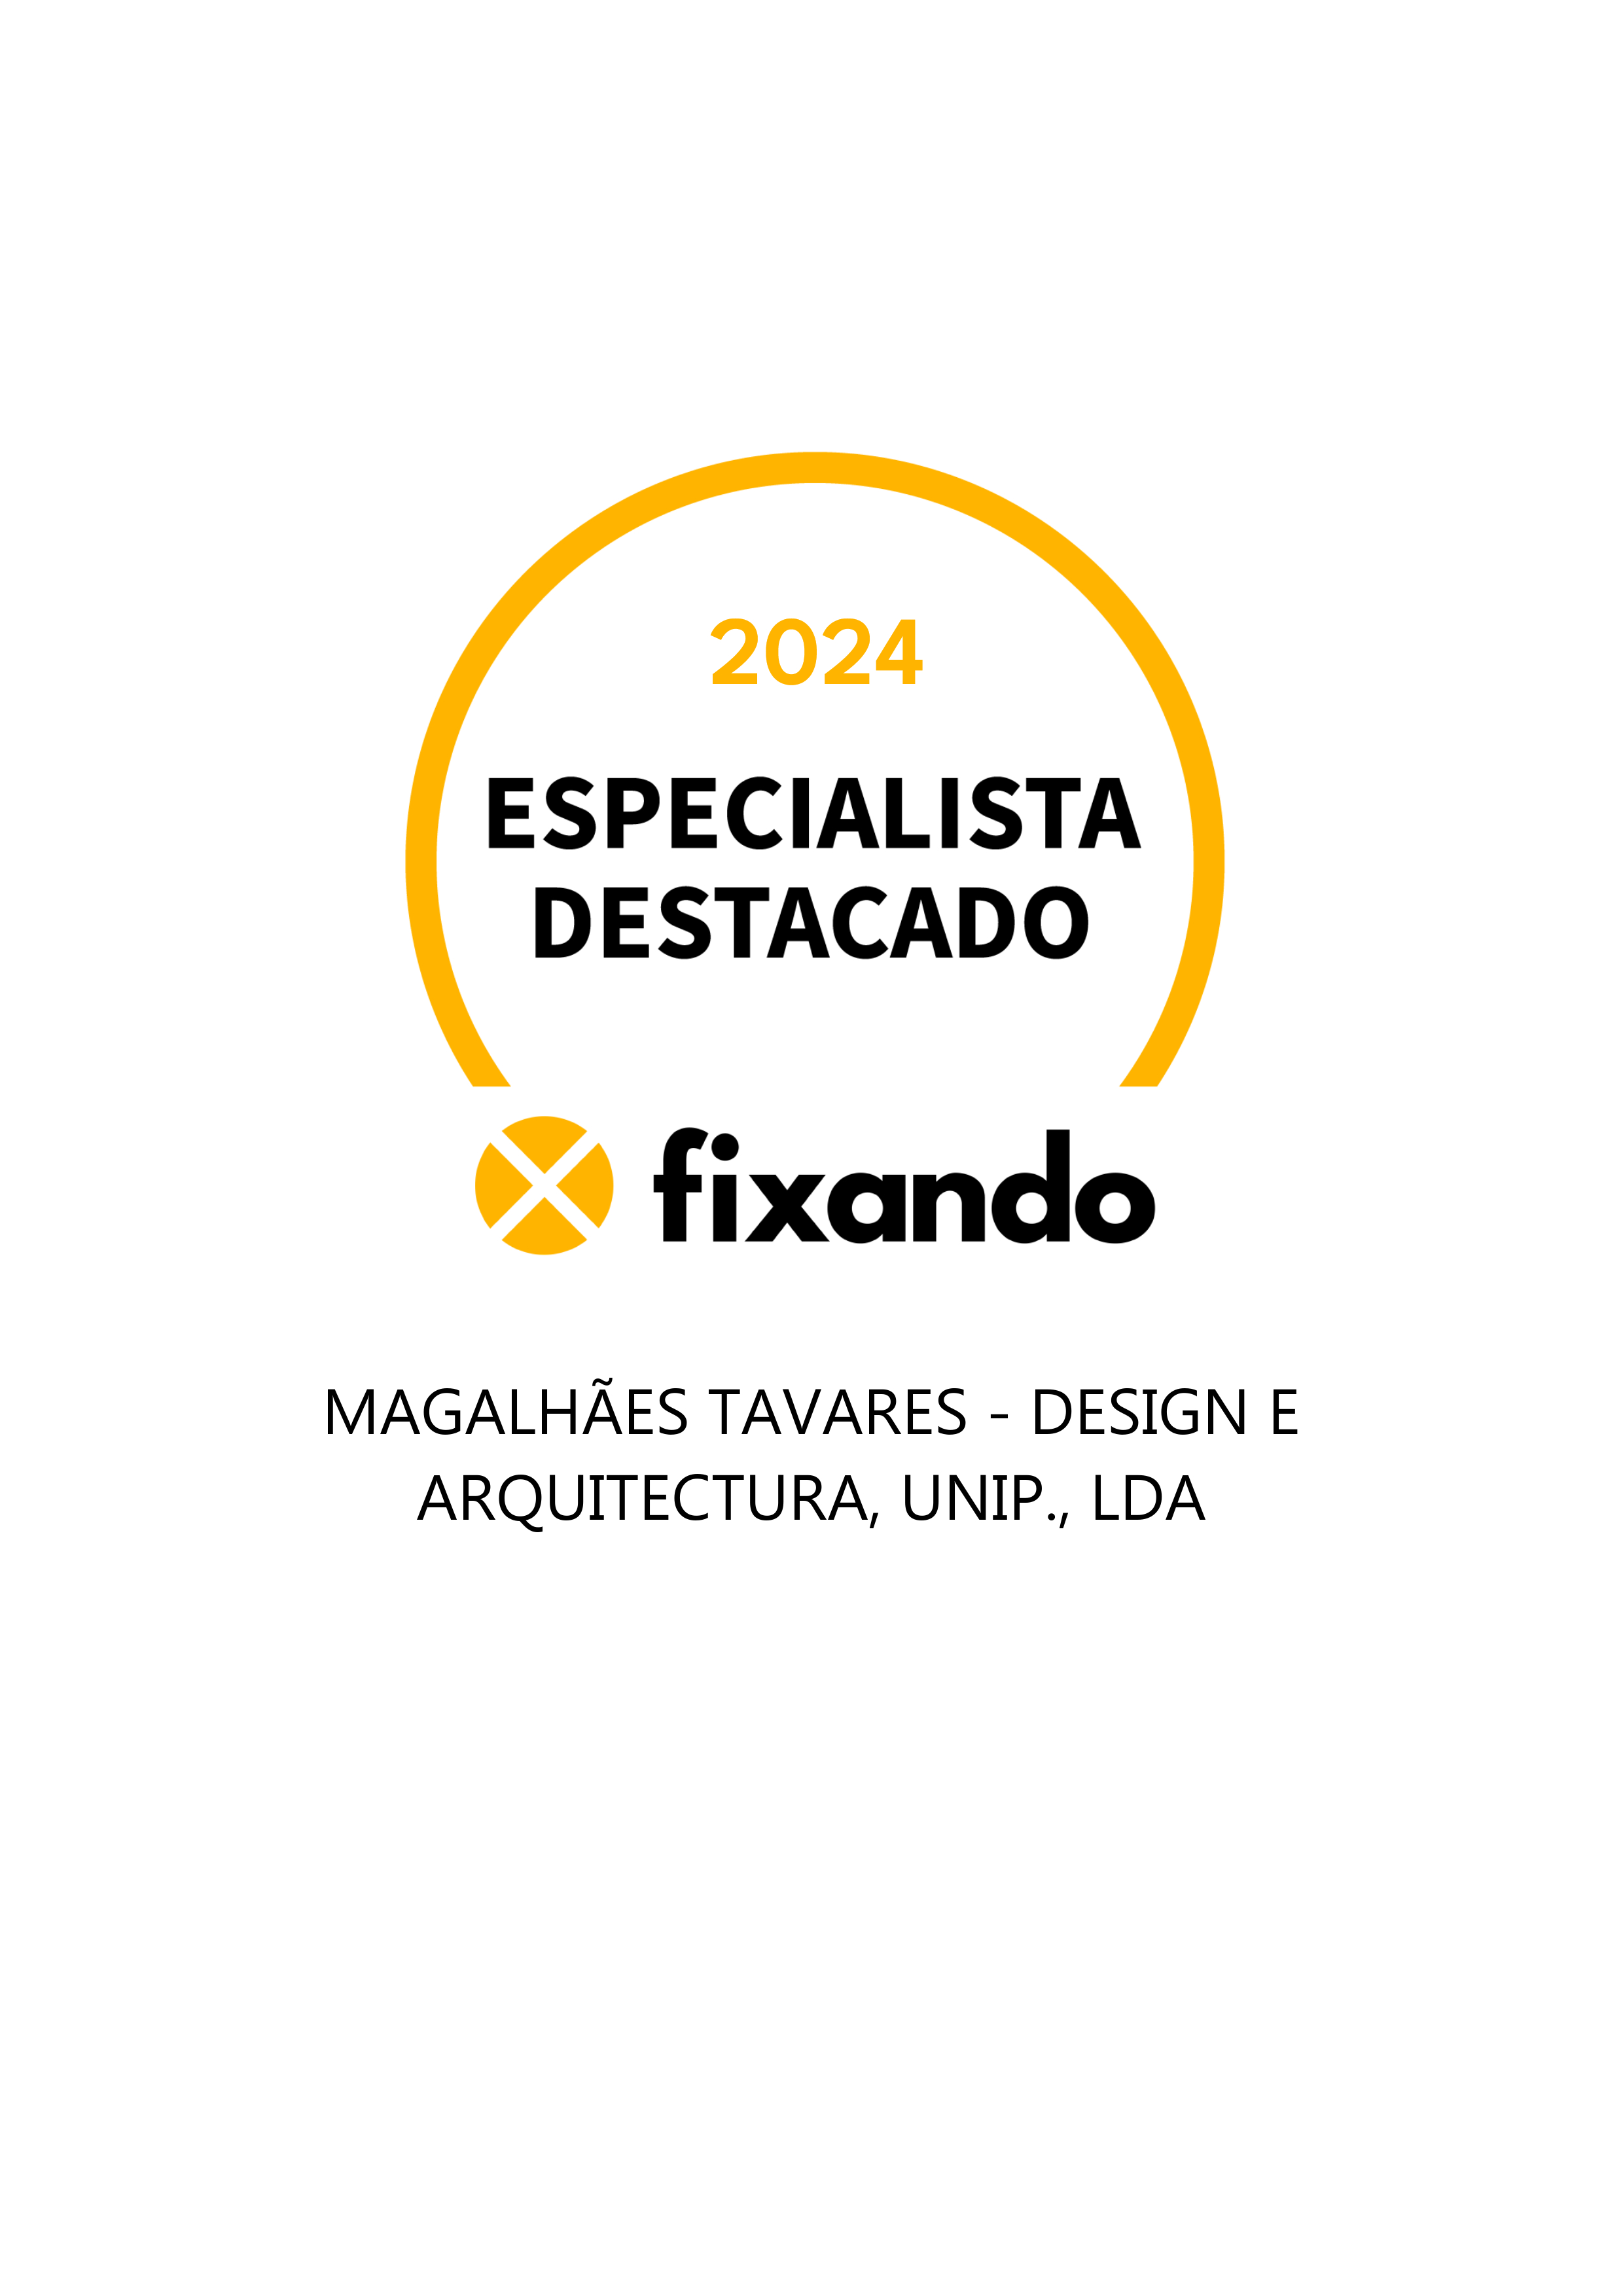 Magalhães Tavares - Design E Arquitectura, Unip., Lda - Porto - Design de Interiores